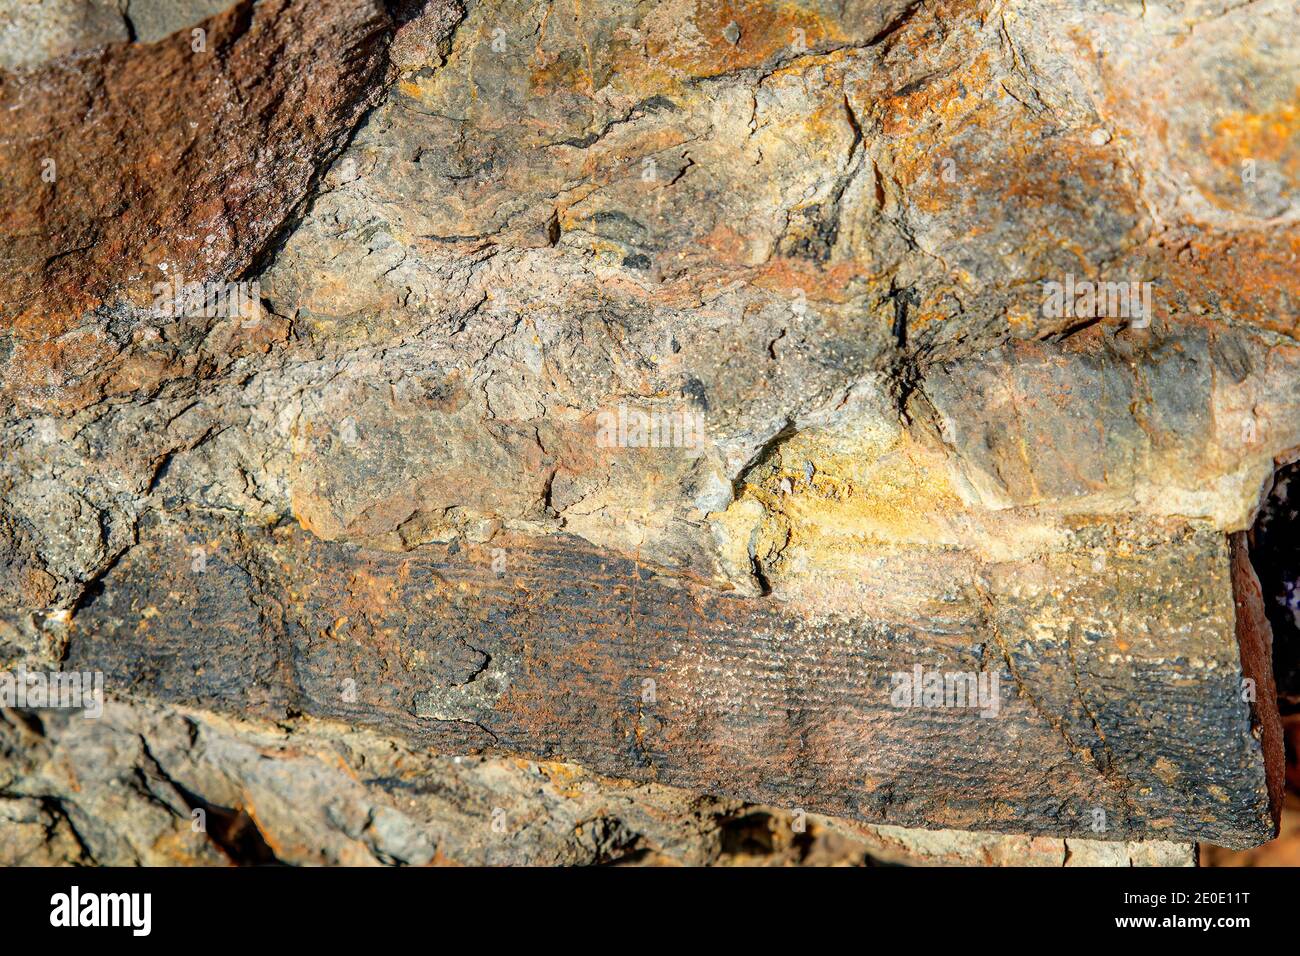 Un fossile abîmé d'une branche de calamites sur le côté d'une falaise. Les calamites étaient communs dans la période carbonifère il y a environ 300 millions d'années. Banque D'Images